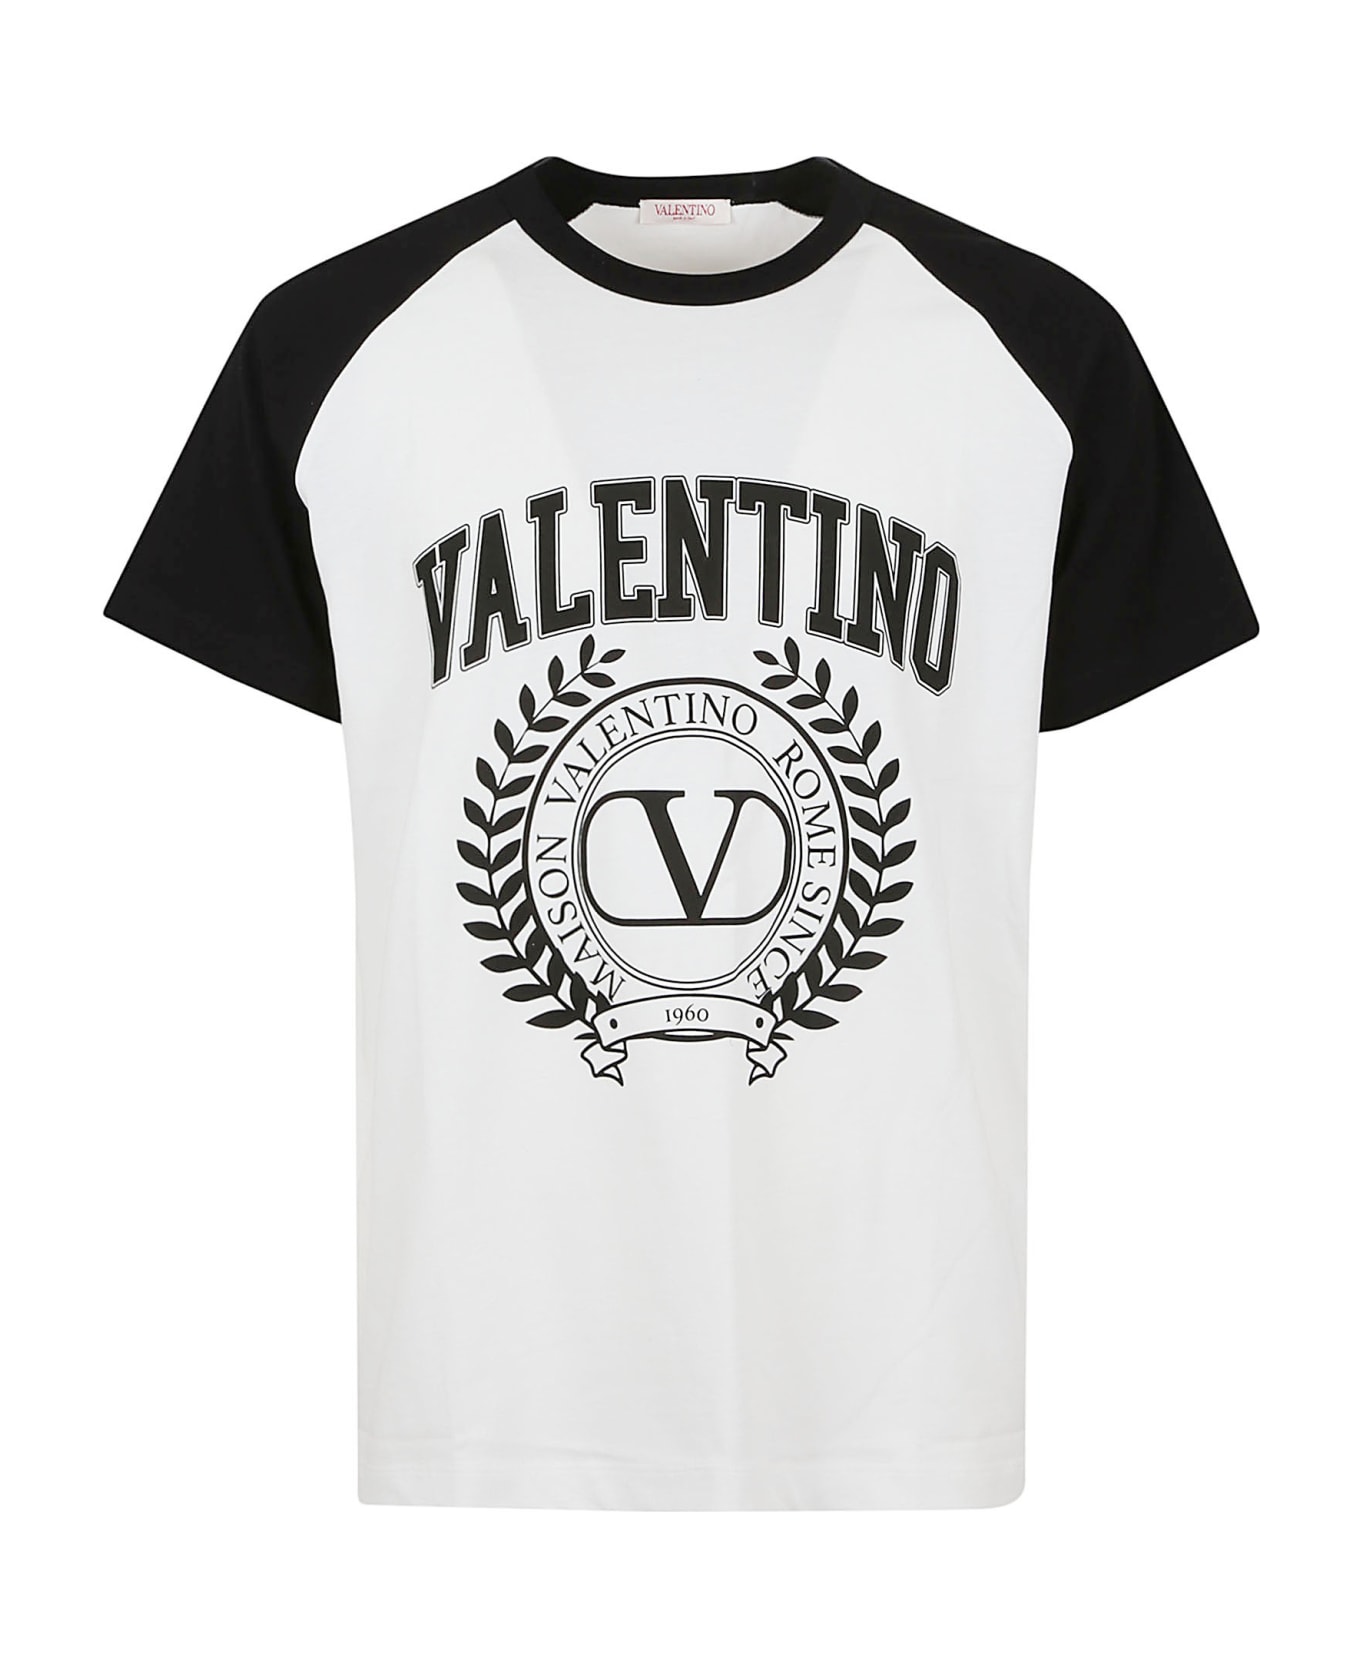 Valentino Garavani T-shirt Maison Valentino - Bianco Nero シャツ